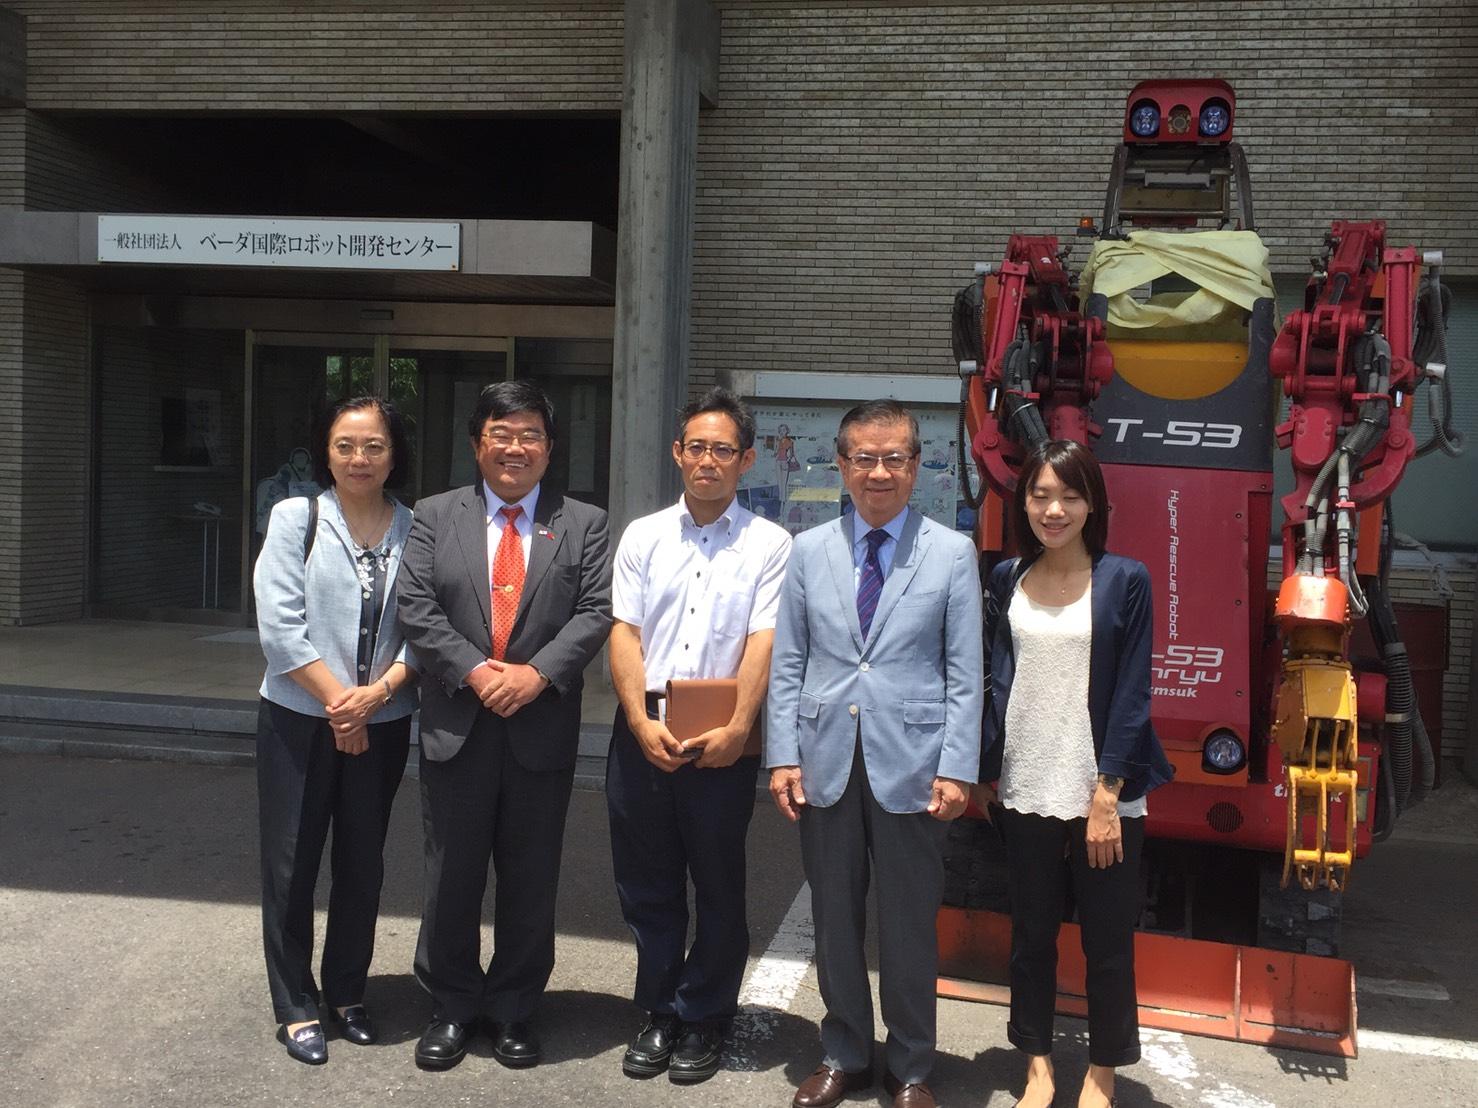 徐國策顧問視察福岡縣宗像市株式會社Tmsuk機器人開發製造工廠。